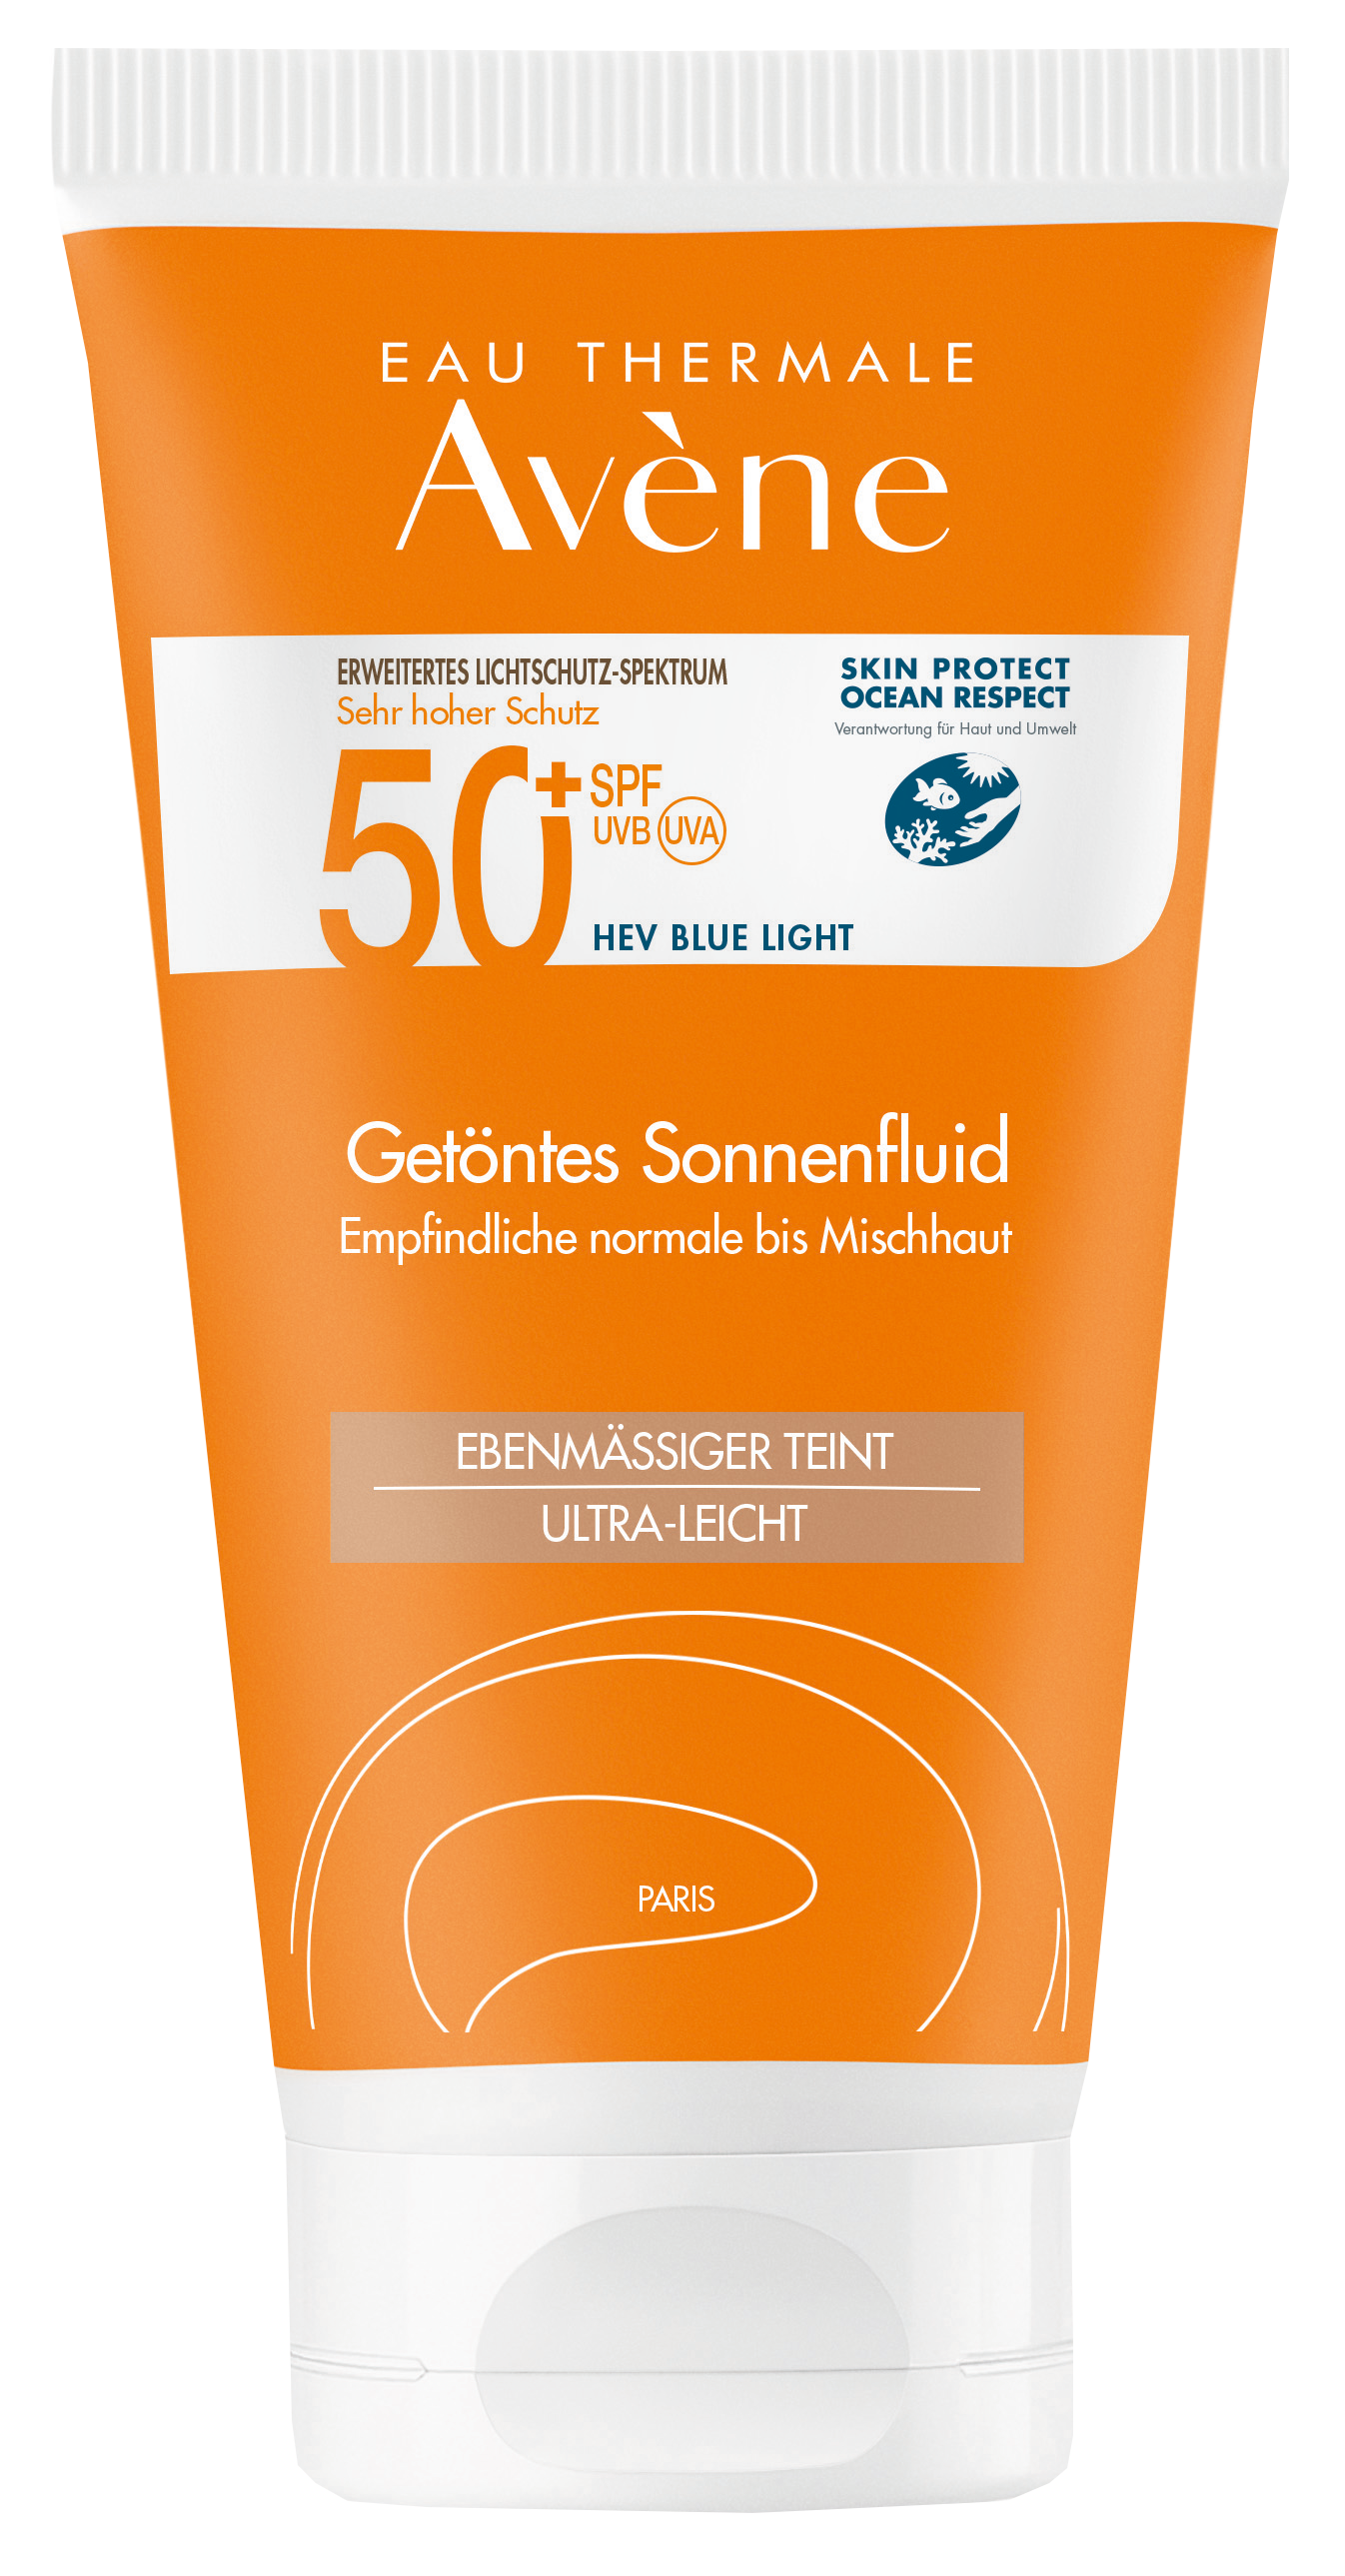 Eau Thermale Avène – Getöntes Sonnenfluid SPF 50+